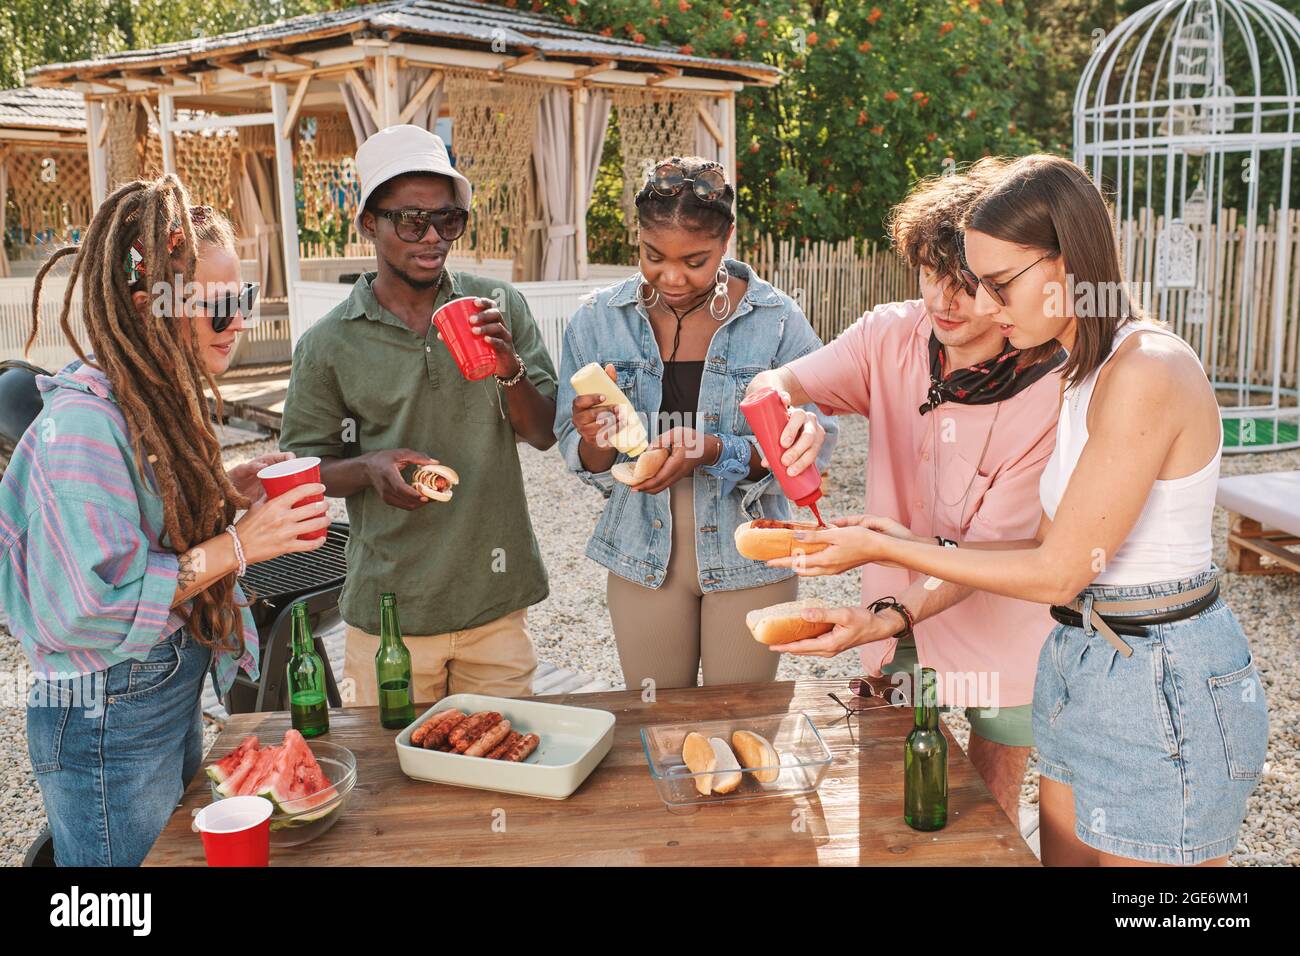 Divers groupes d'amis buvant des bières et mangeant des hot dogs à table sur la plage en profitant de la petite fête d'été Banque D'Images